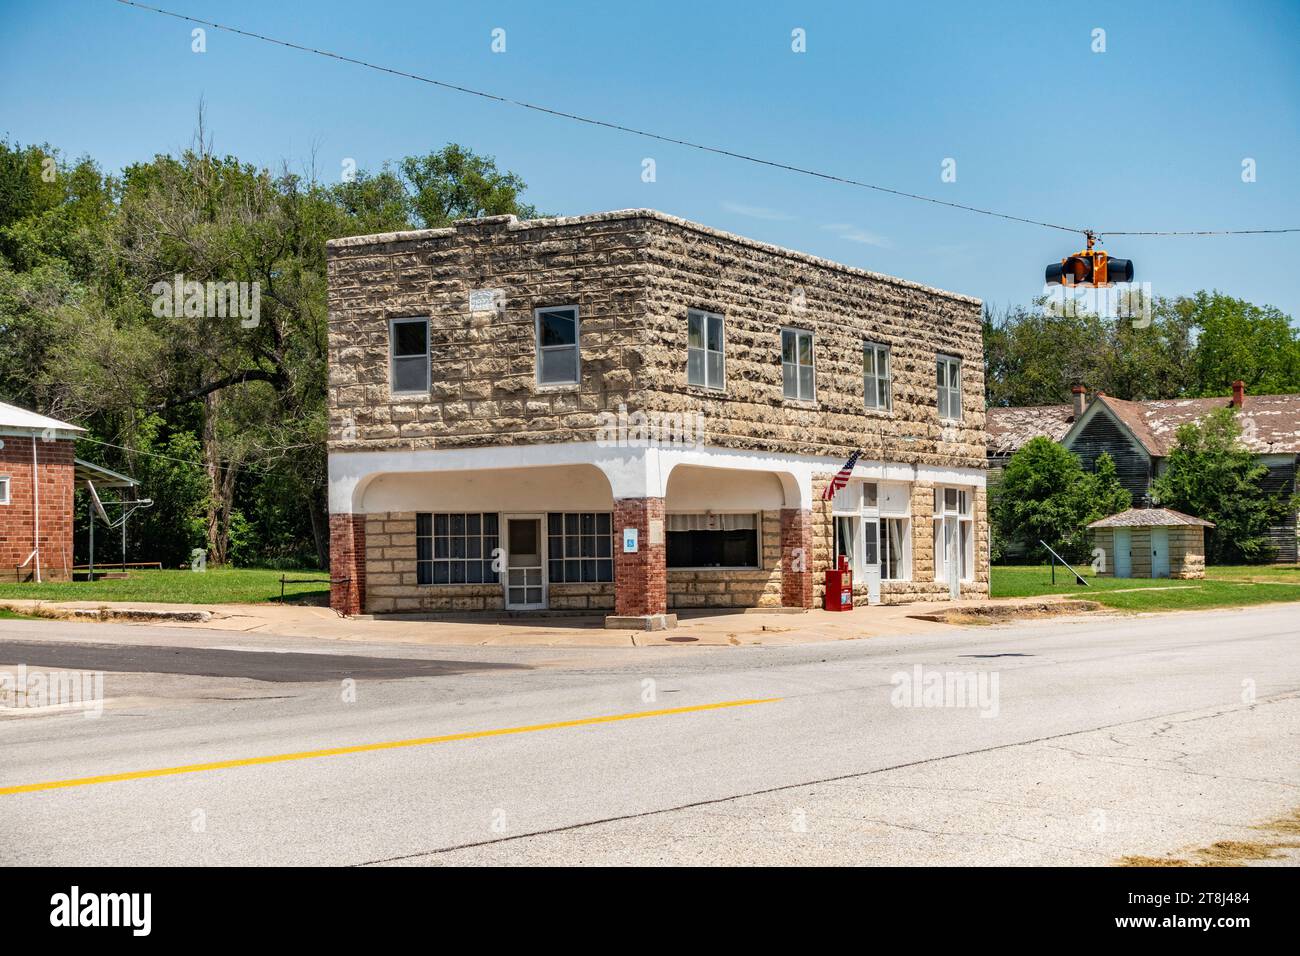 Das Cambridge, Kansas I00F Gebäude und cattlemans' Café aus Sandstein, ein altes historisches Gebäude im Westen von Kansas, USA. Stockfoto